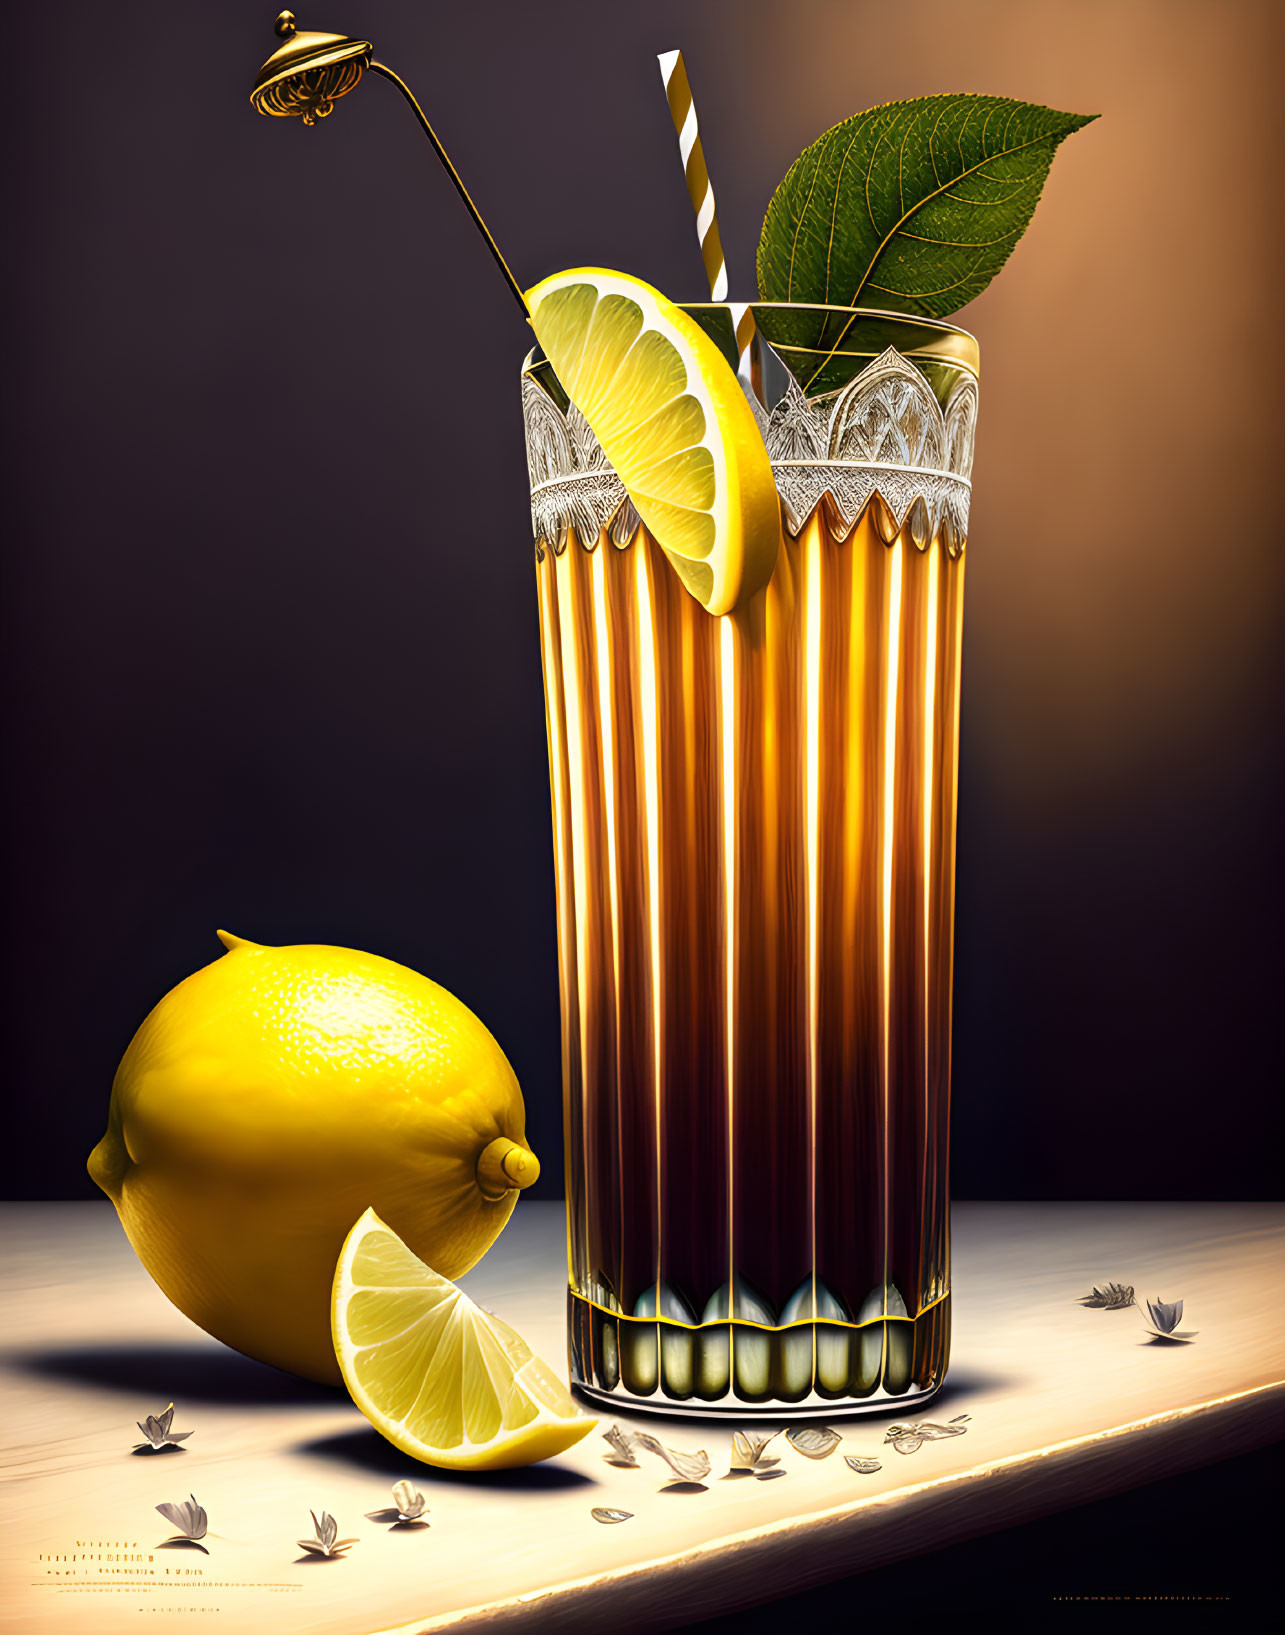 Photorealistic digital image of iced tea with lemon slice, straw, whole lemon, wedge,